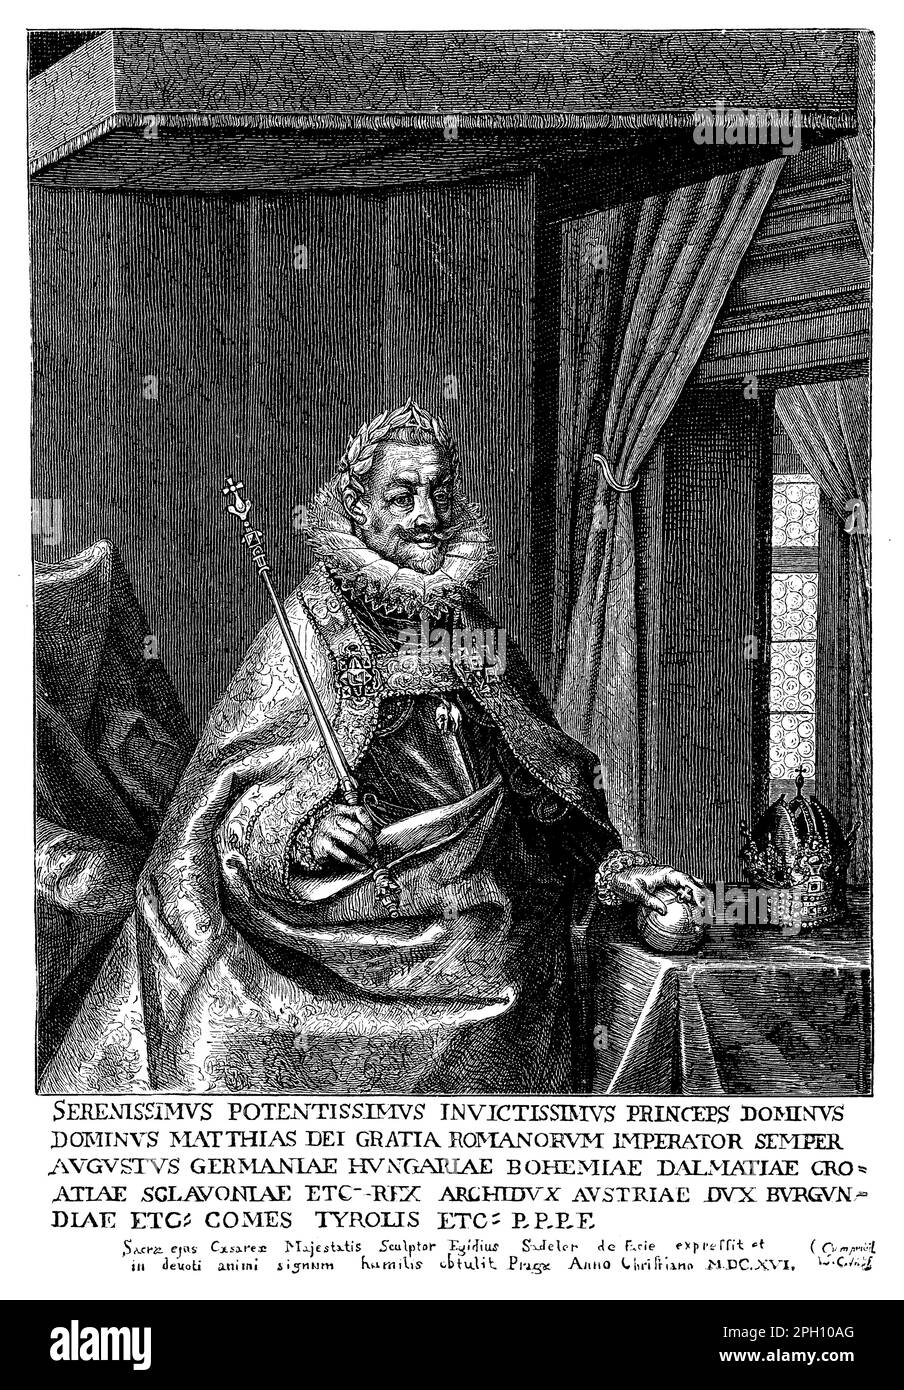 Mattia (1557-1619) fu imperatore del Sacro Romano Impero dal 1612 fino alla sua morte. Fu membro della Casa degli Asburgo e fu conosciuto per i suoi sforzi di riformare l'amministrazione imperiale e stabilizzare l'Impero dopo i conflitti religiosi del secolo precedente. Mattia supervisionò anche l'inizio della rivolta boema e la Guerra dei Trent'anni, che durò per gran parte del suo regno. Fu patrono delle arti e delle scienze e viene ricordato per il suo sostegno alla musica e al teatro Foto Stock